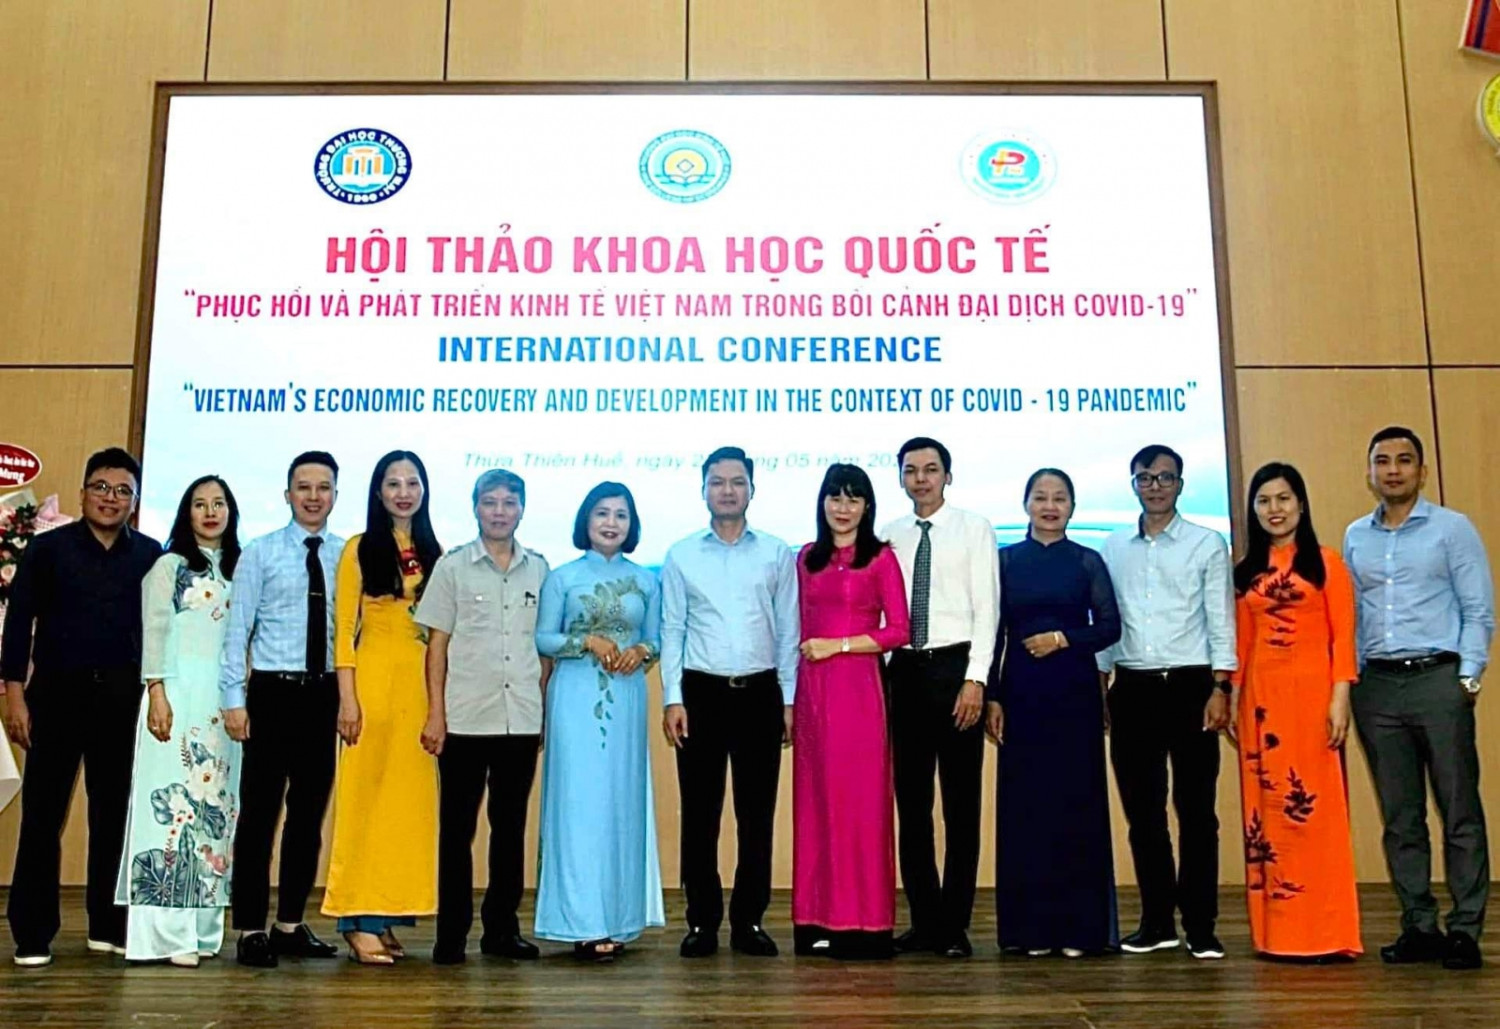 Hội thảo khoa học Quốc tế chủ đề “Phục hồi và phát triển kinh tế Việt Nam trong bối cảnh đại dịch Covid-19”